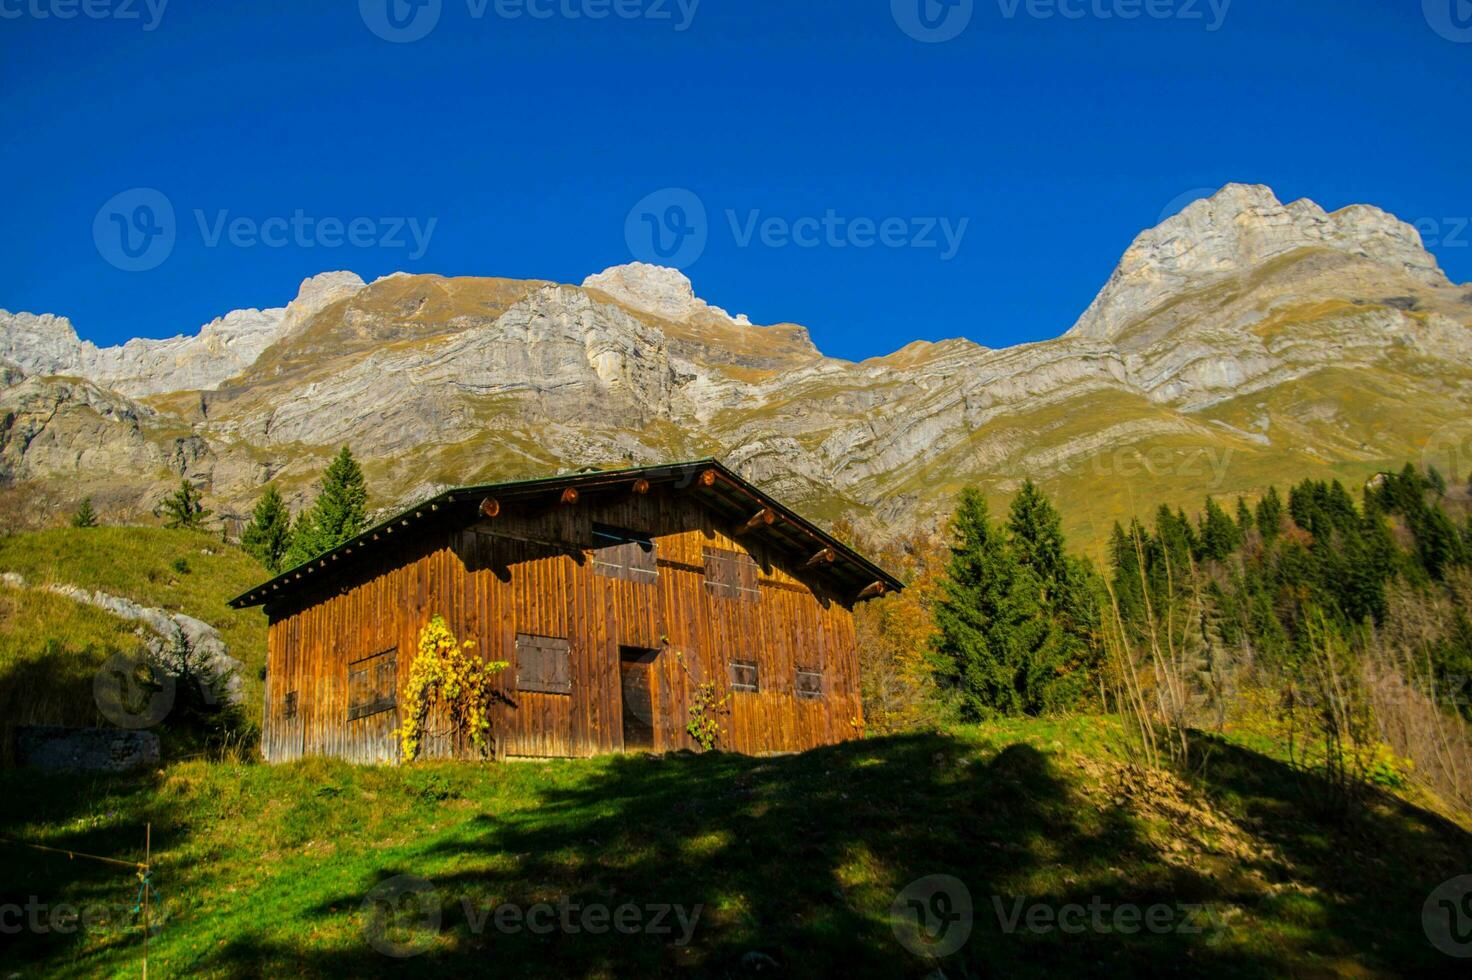 franska alps landskap foto